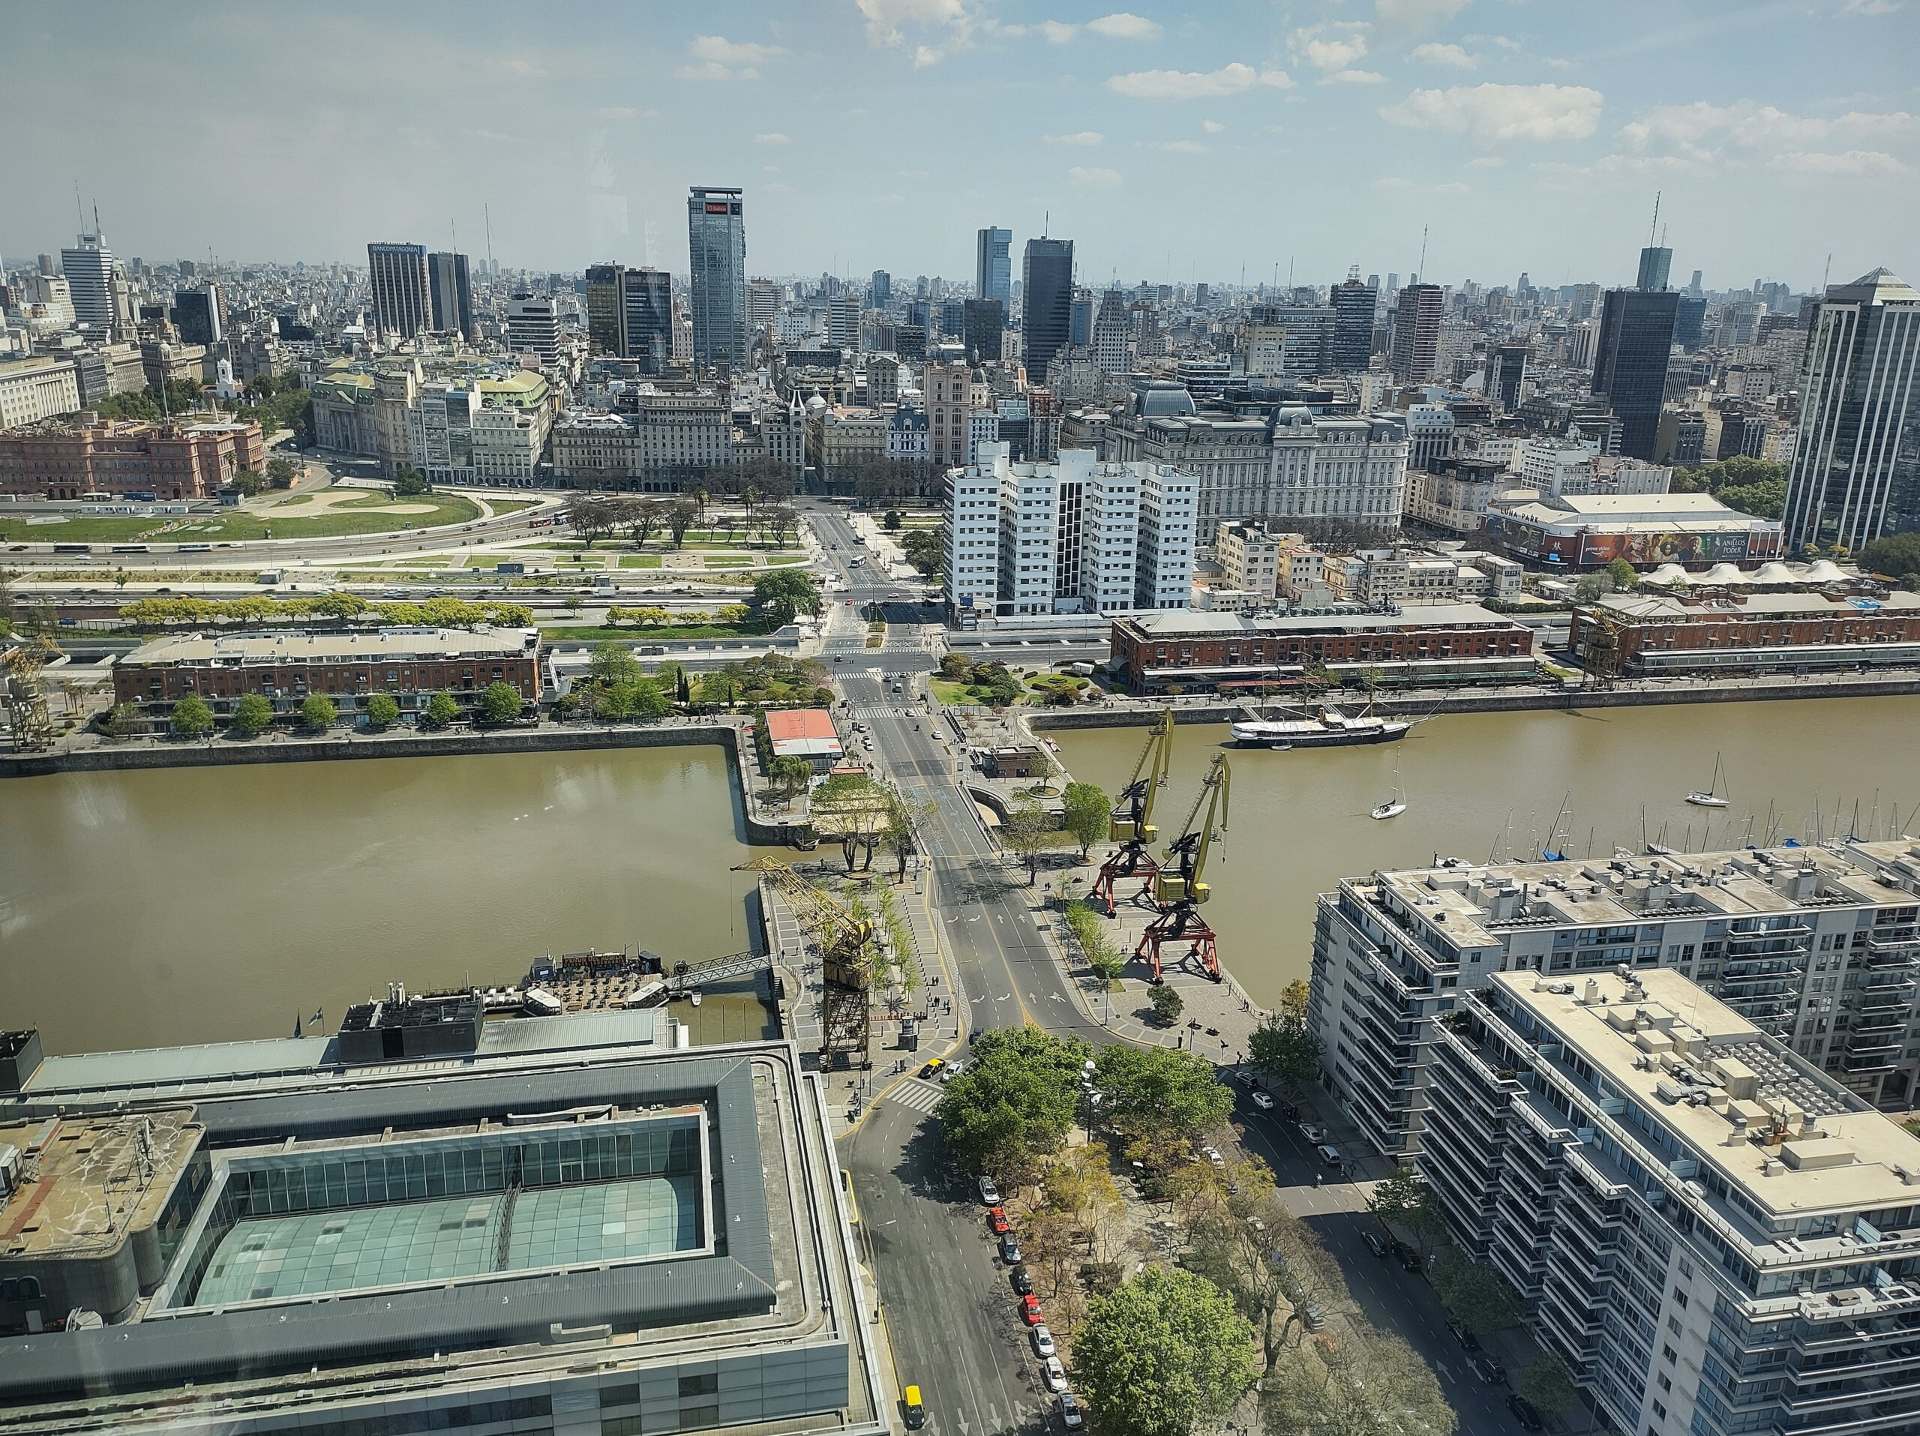 Vista área de Puerto Madero, em Buenos Aires. Paisagem com muitos prédios